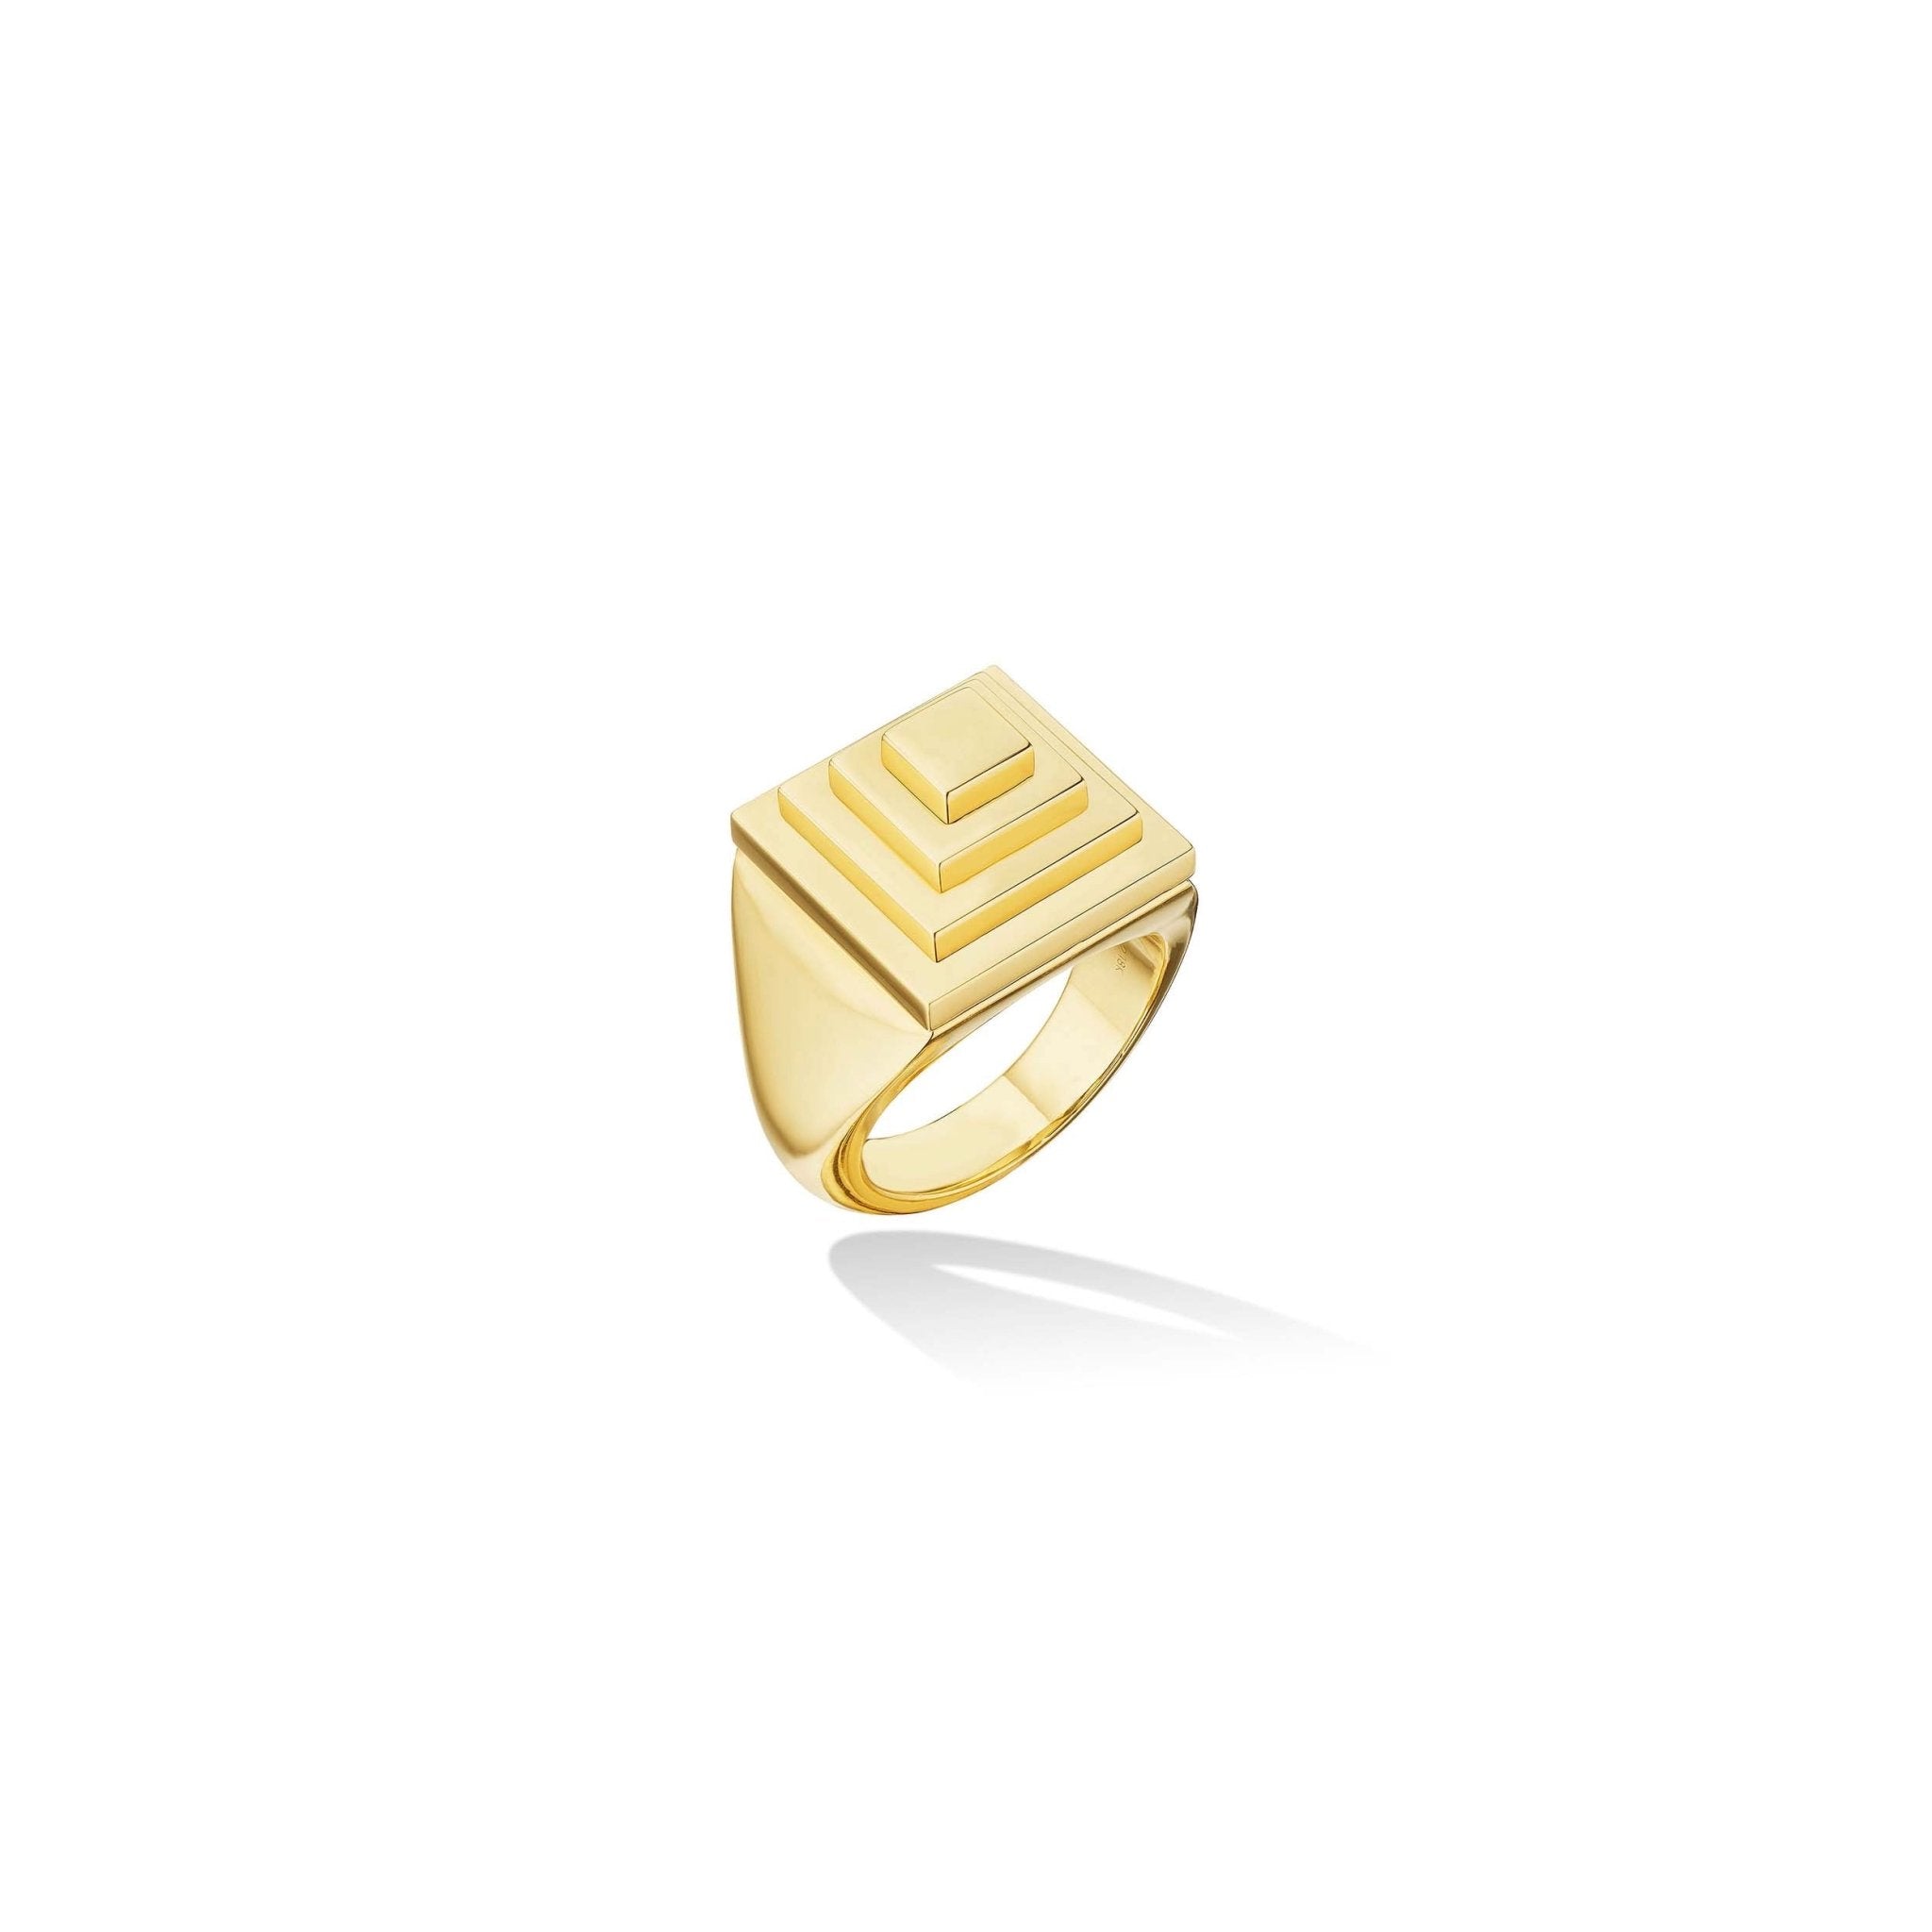 EGMR003 - 18K Men's Gold Ring